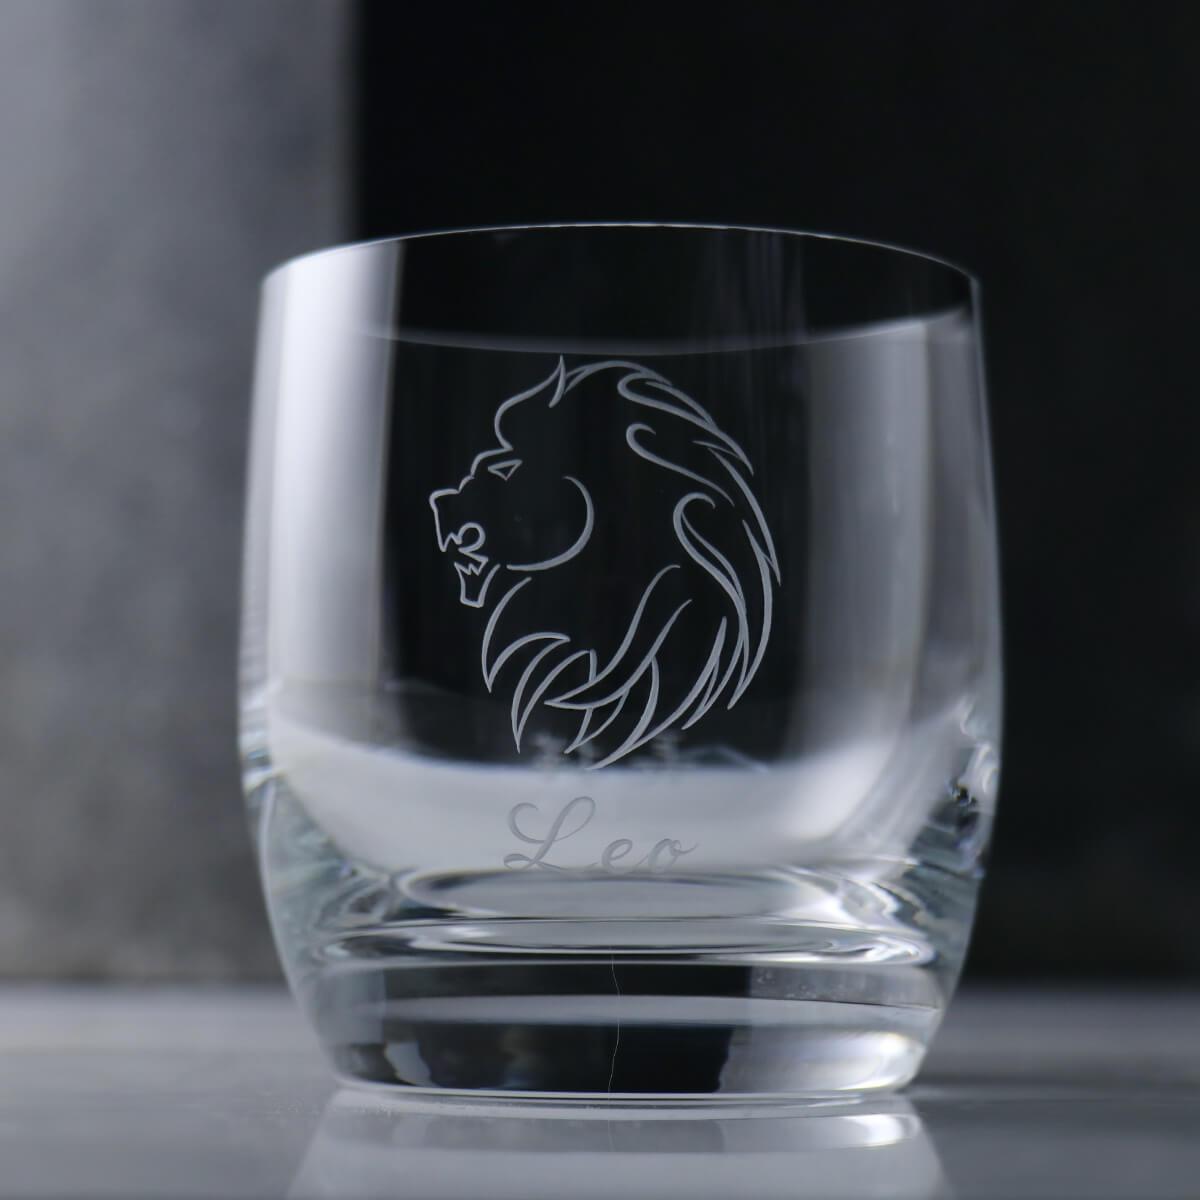 395cc 上海【Lucaris】獅子 無鉛水晶威士忌杯 - MSA玻璃雕刻